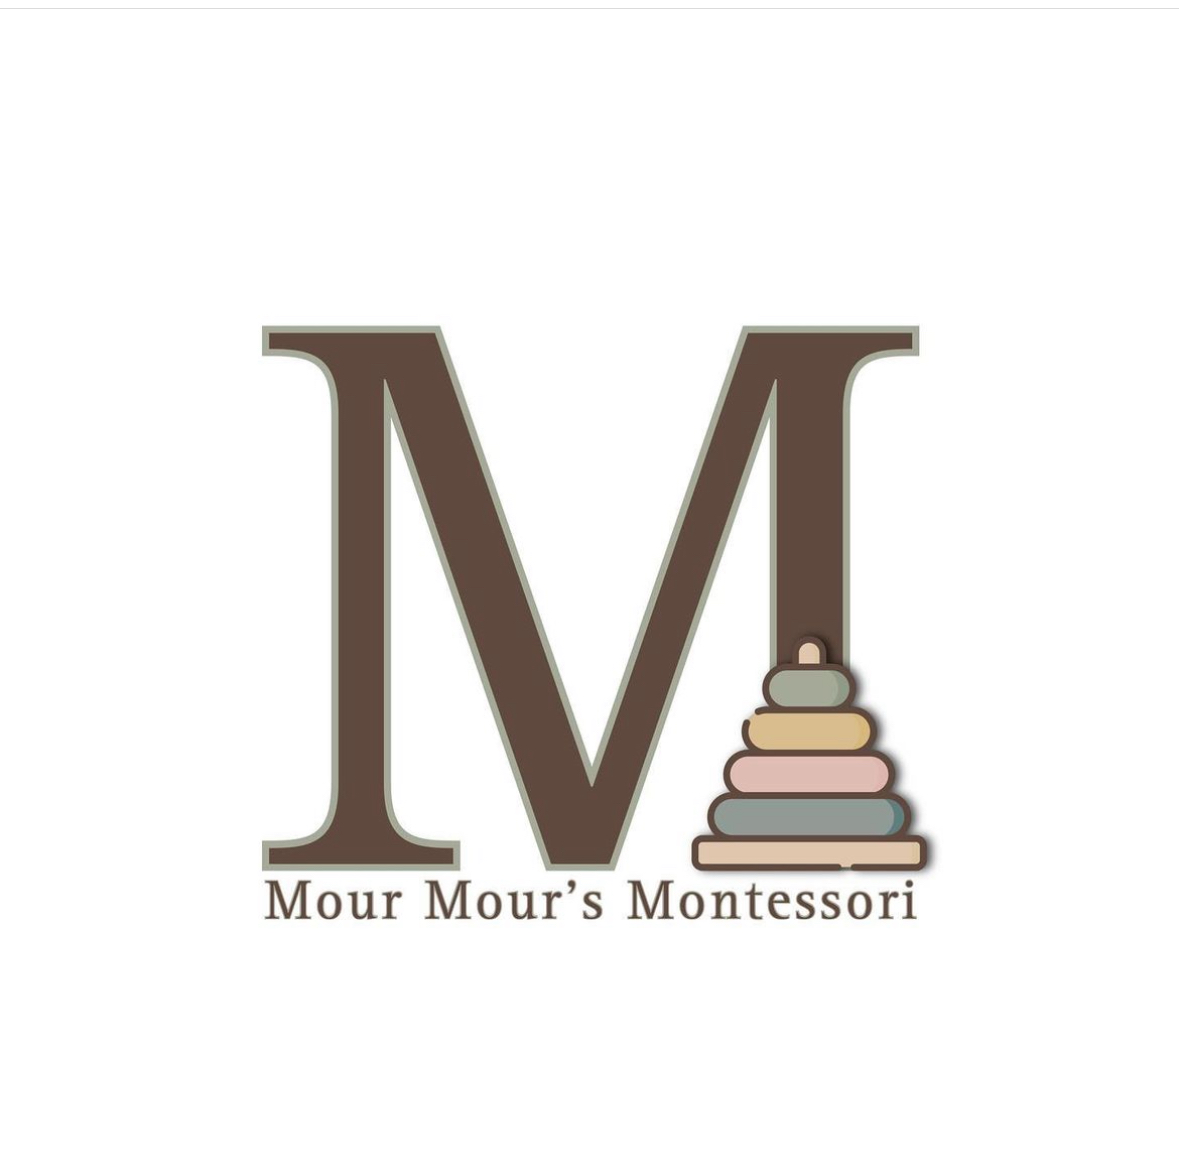 Mour Mour’s Montessori